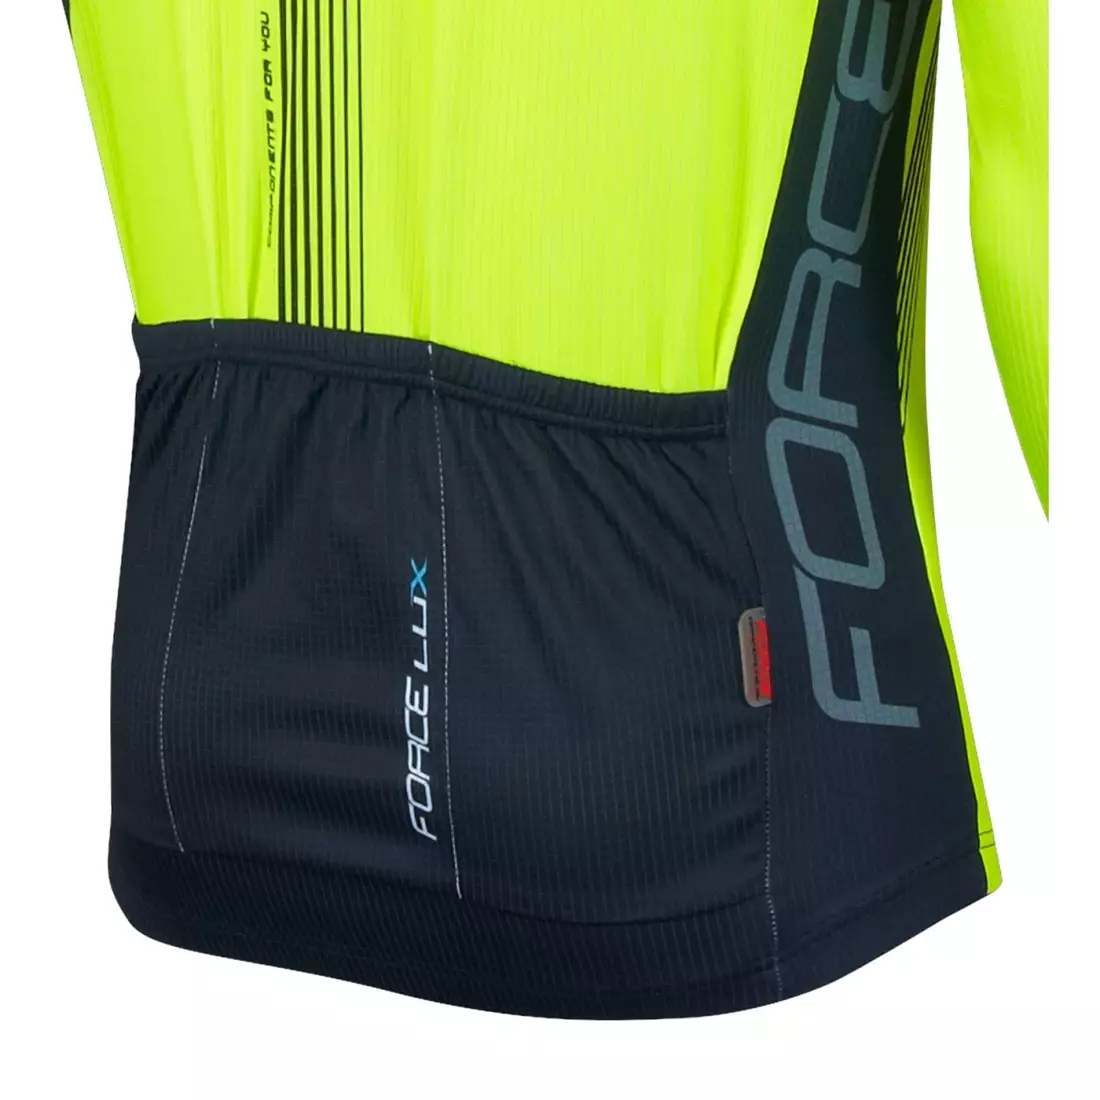 FORCE LUX pánsky cyklistický dres dlhý rukáv čierno-fluorovaný 900141